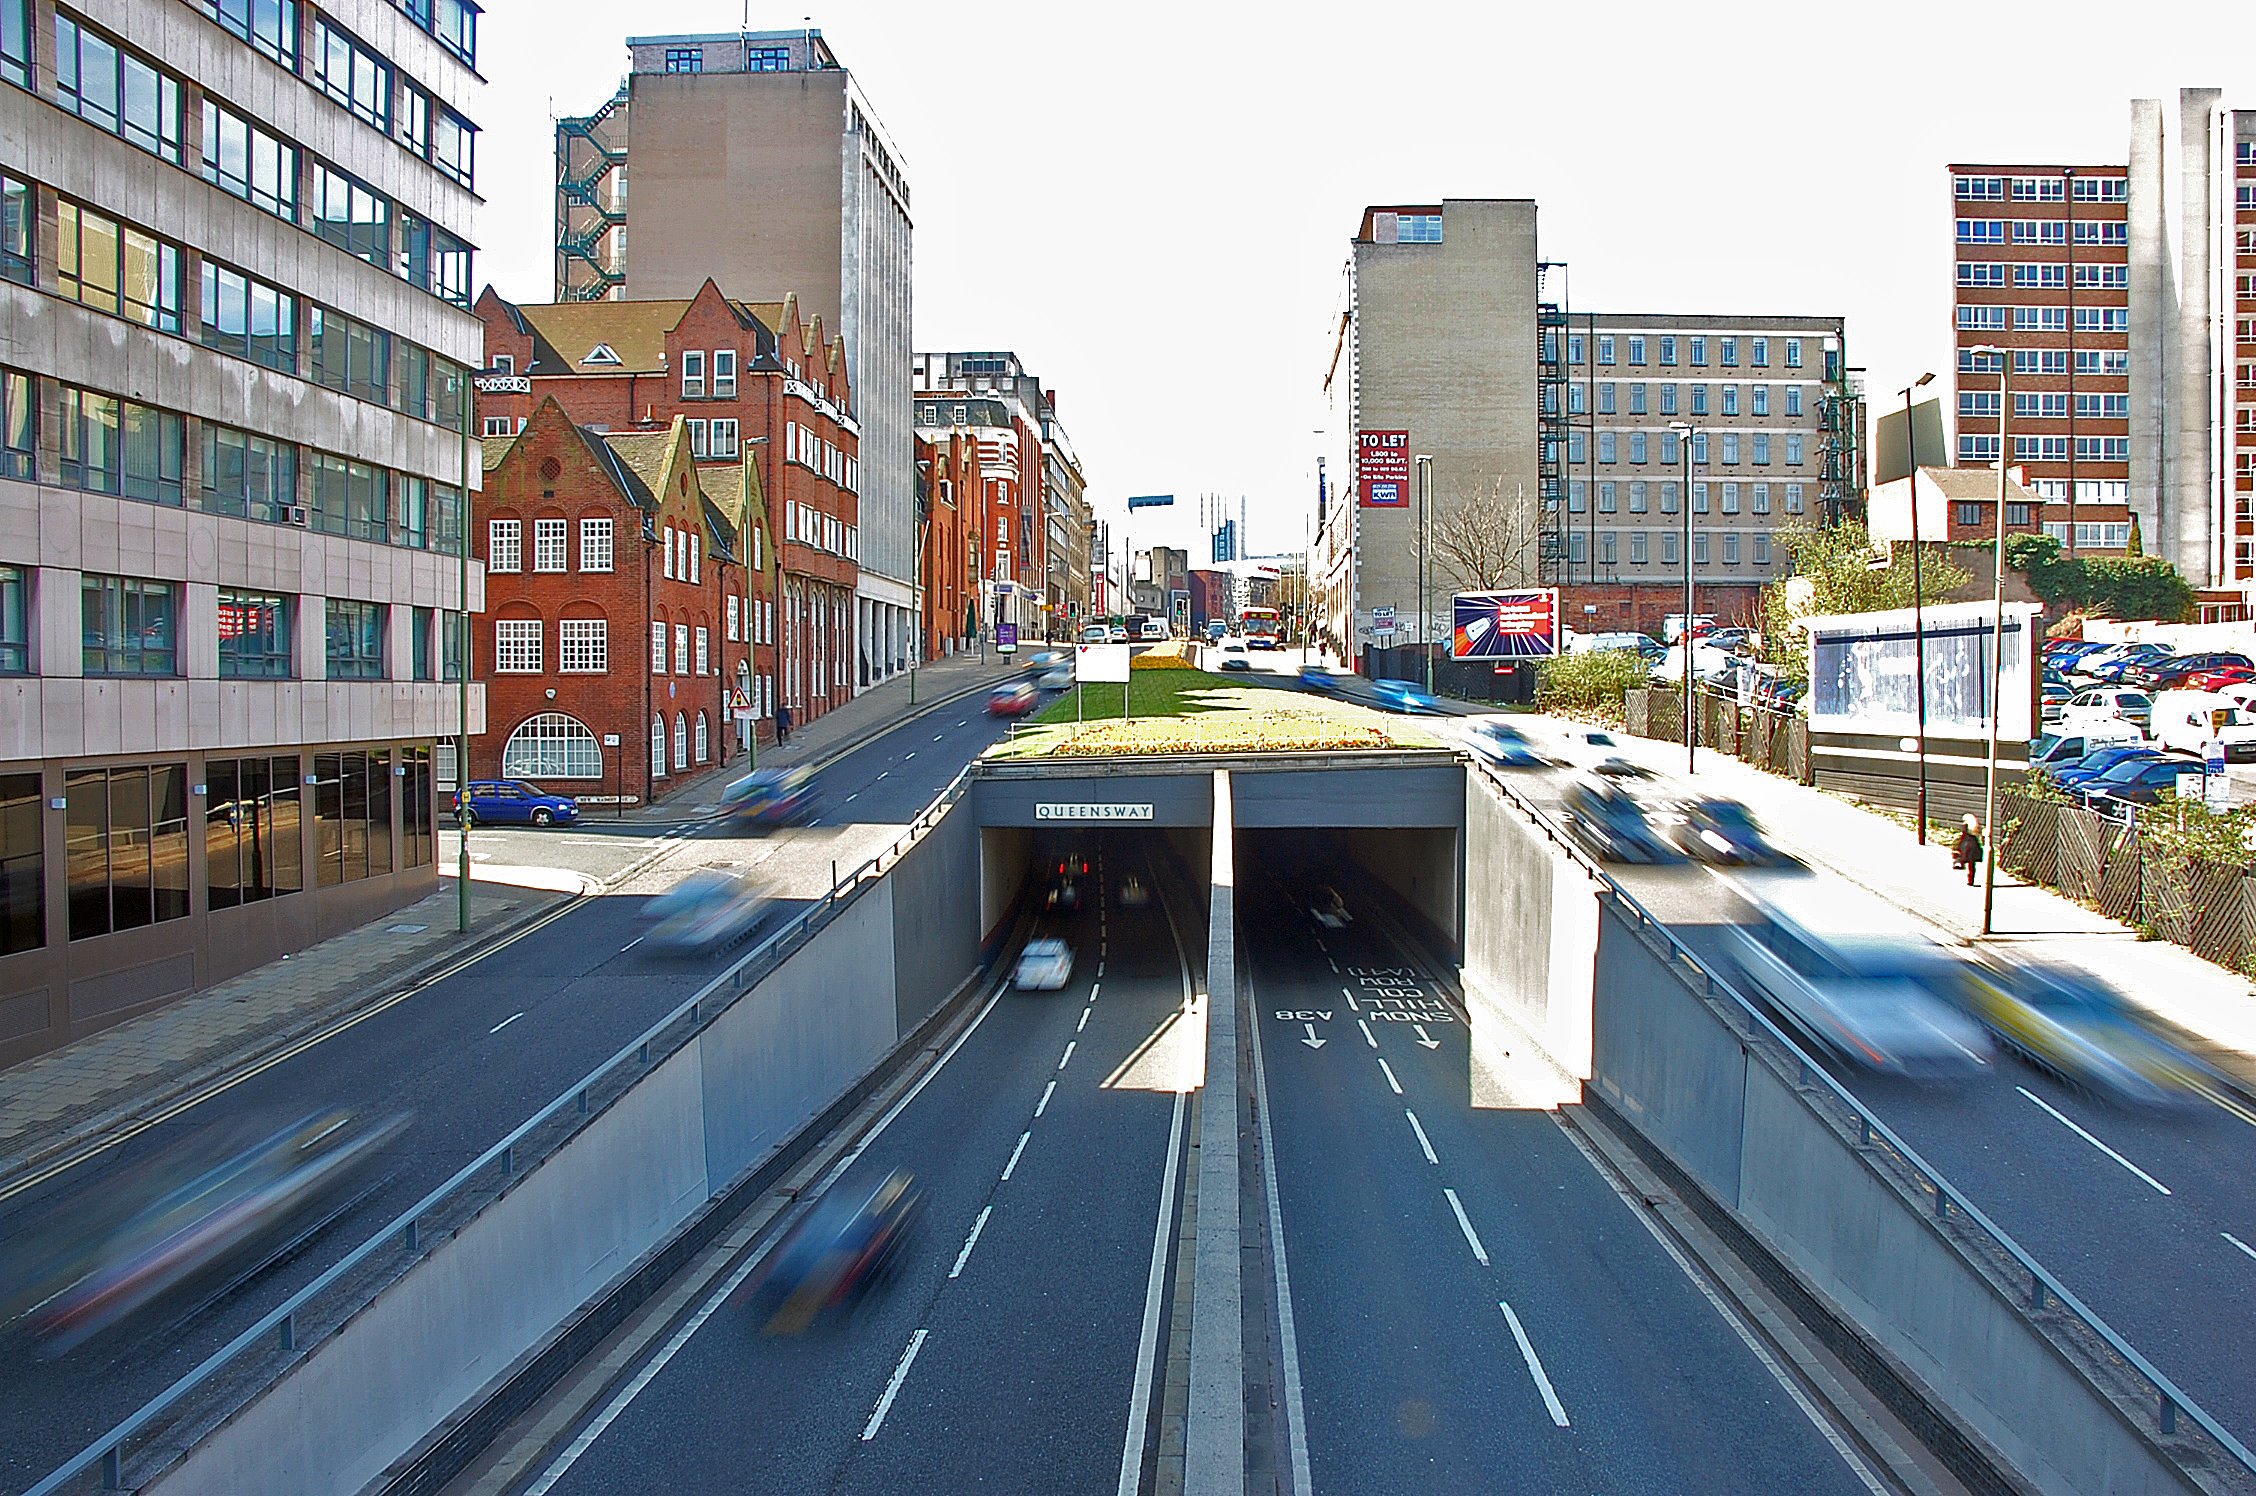 Underpass in Queensway